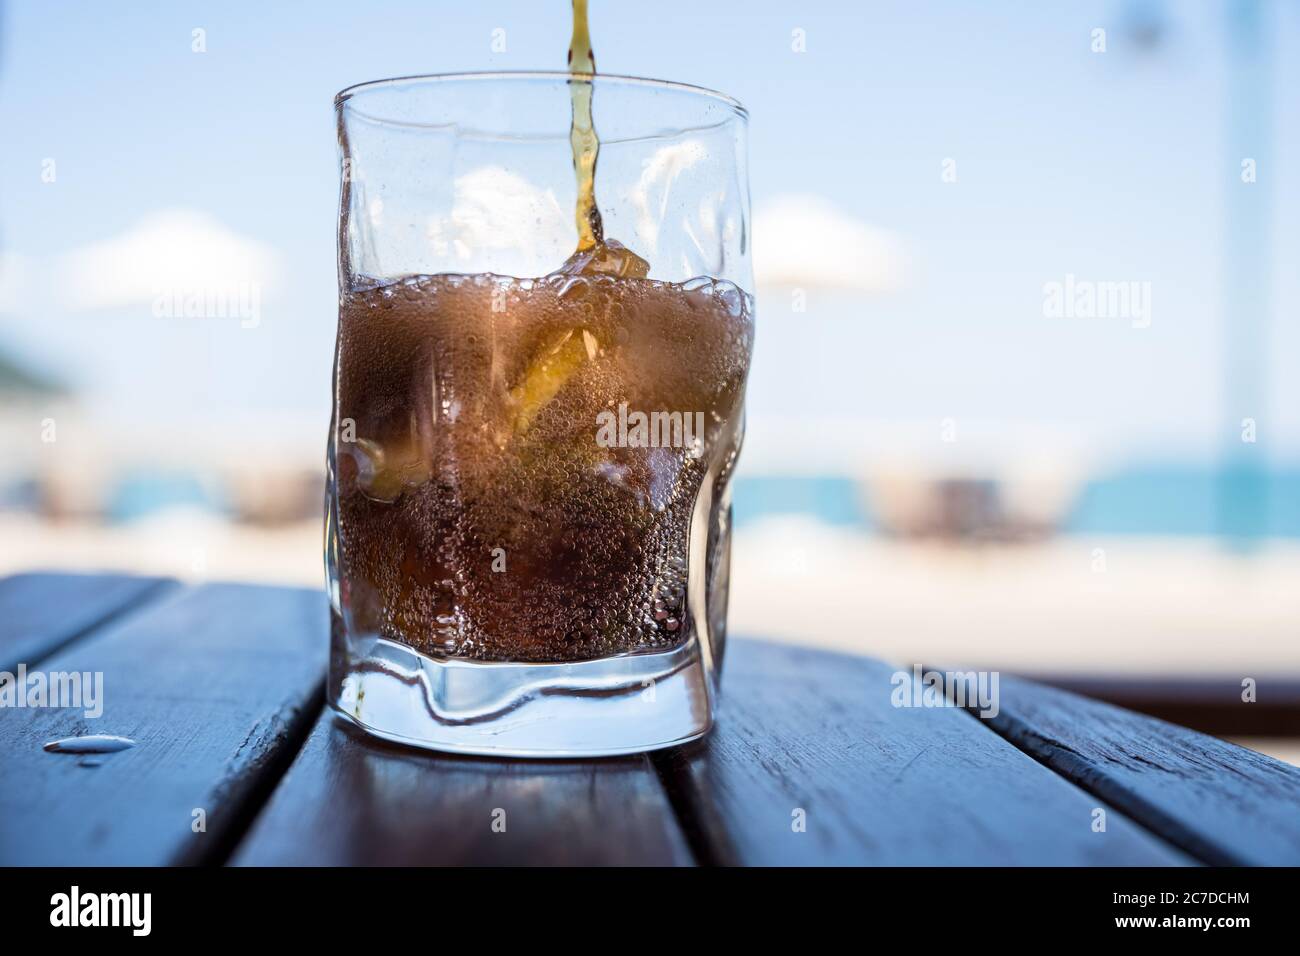 Ein Softdrink wird in ein Glas mit Eis und Zitrone gegossen, im Hintergrund sieht man Sonnenschirme, Himmel und Strand. Stockfoto